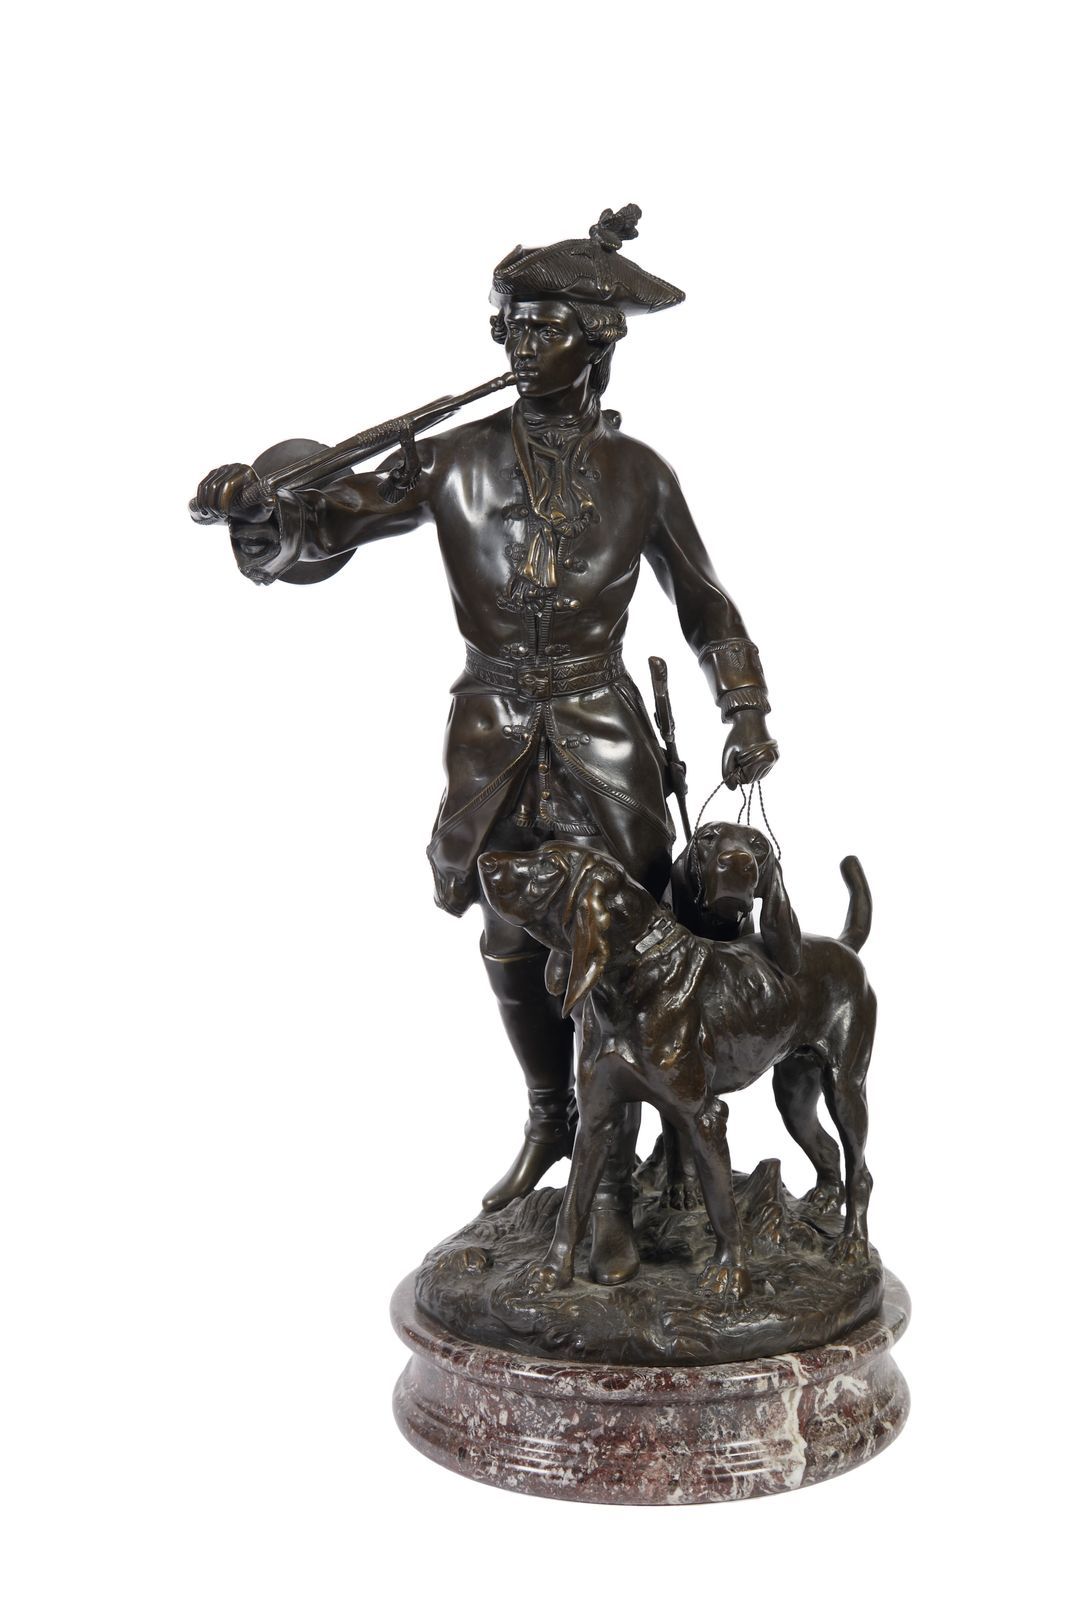 Null 314 伊波利特-莫罗 (1832-1927)
带狗打猎的男仆
棕色铜质雕塑；铸造版
大理石底座
总高度79厘米